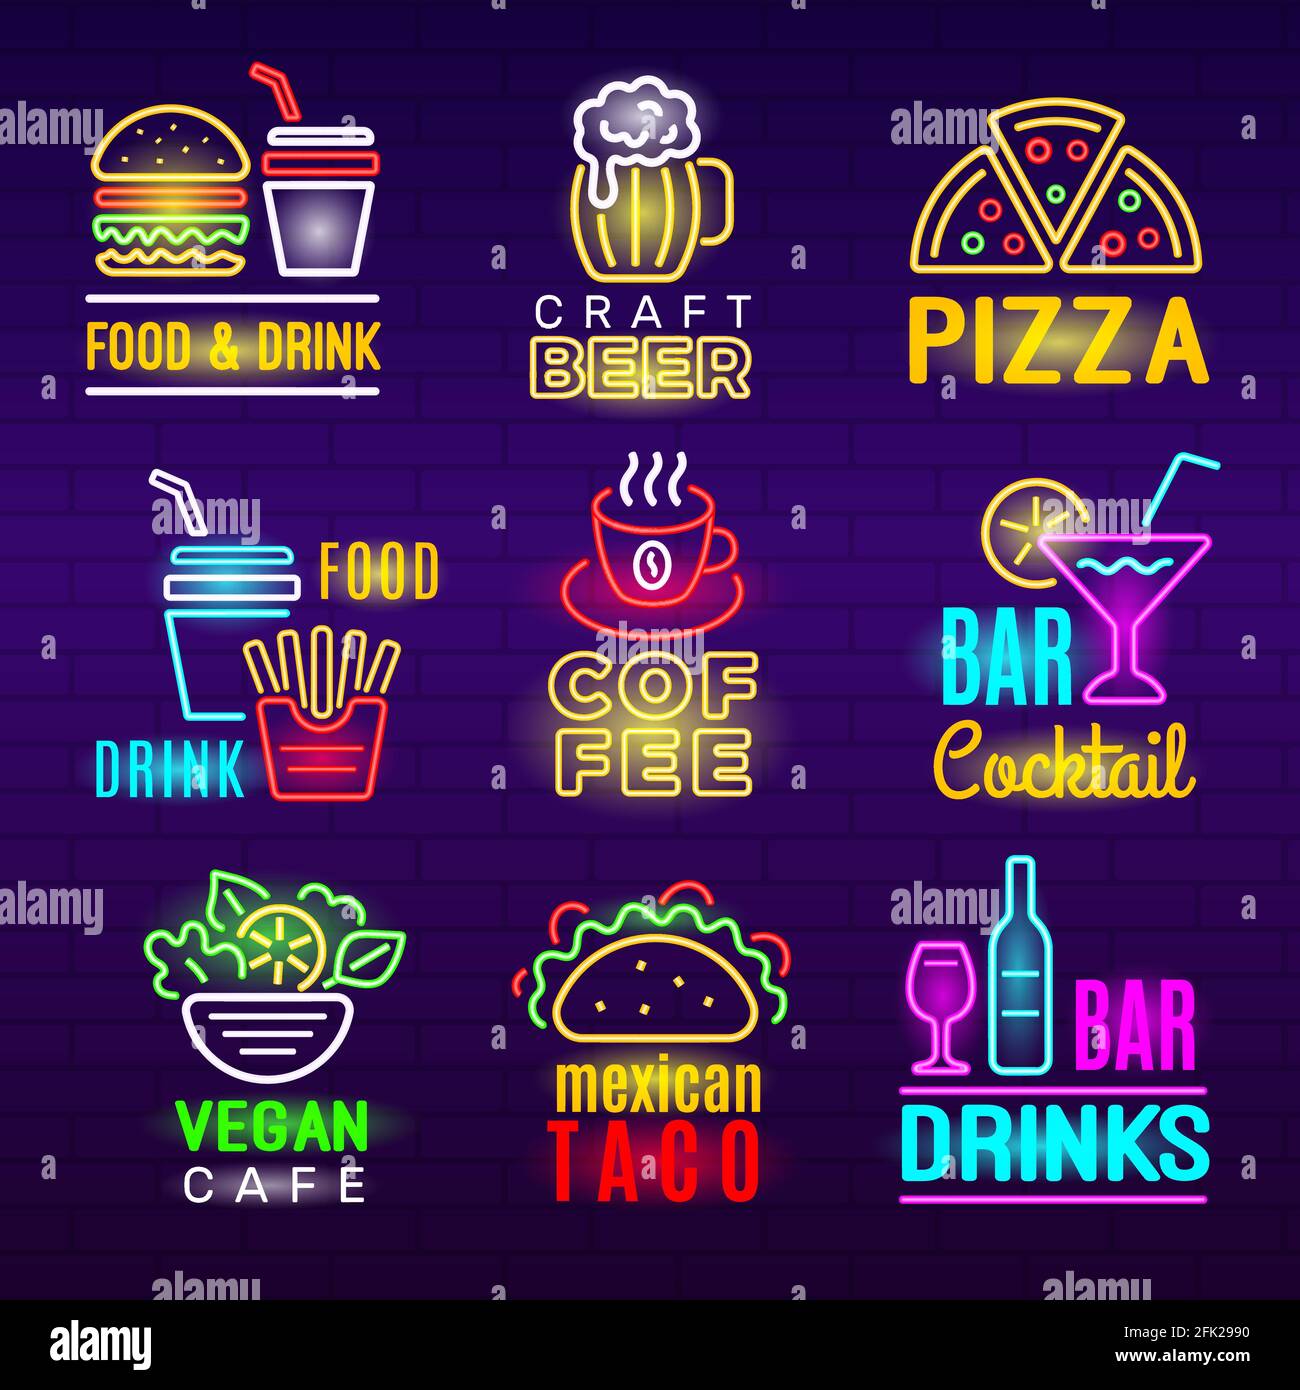 Neon-Symbol für das Essen. Bier Getränke Licht Werbung Emblem Pizza Handwerk Produkte Vektor-Set Stock Vektor